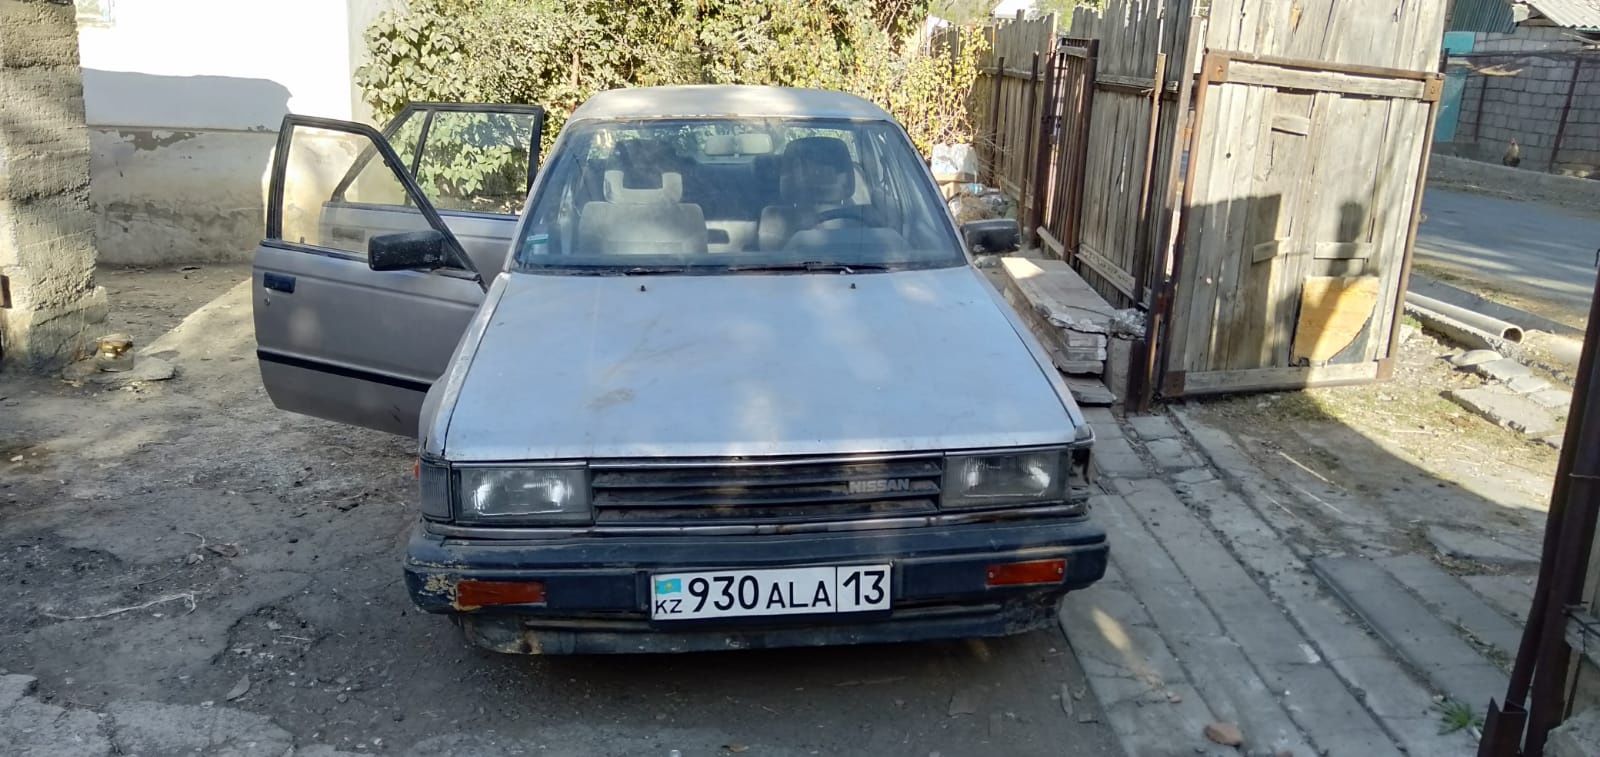 Продаётся Nissan Bluebird 1986 года. 
Машина на казахстанском учёте.
Д